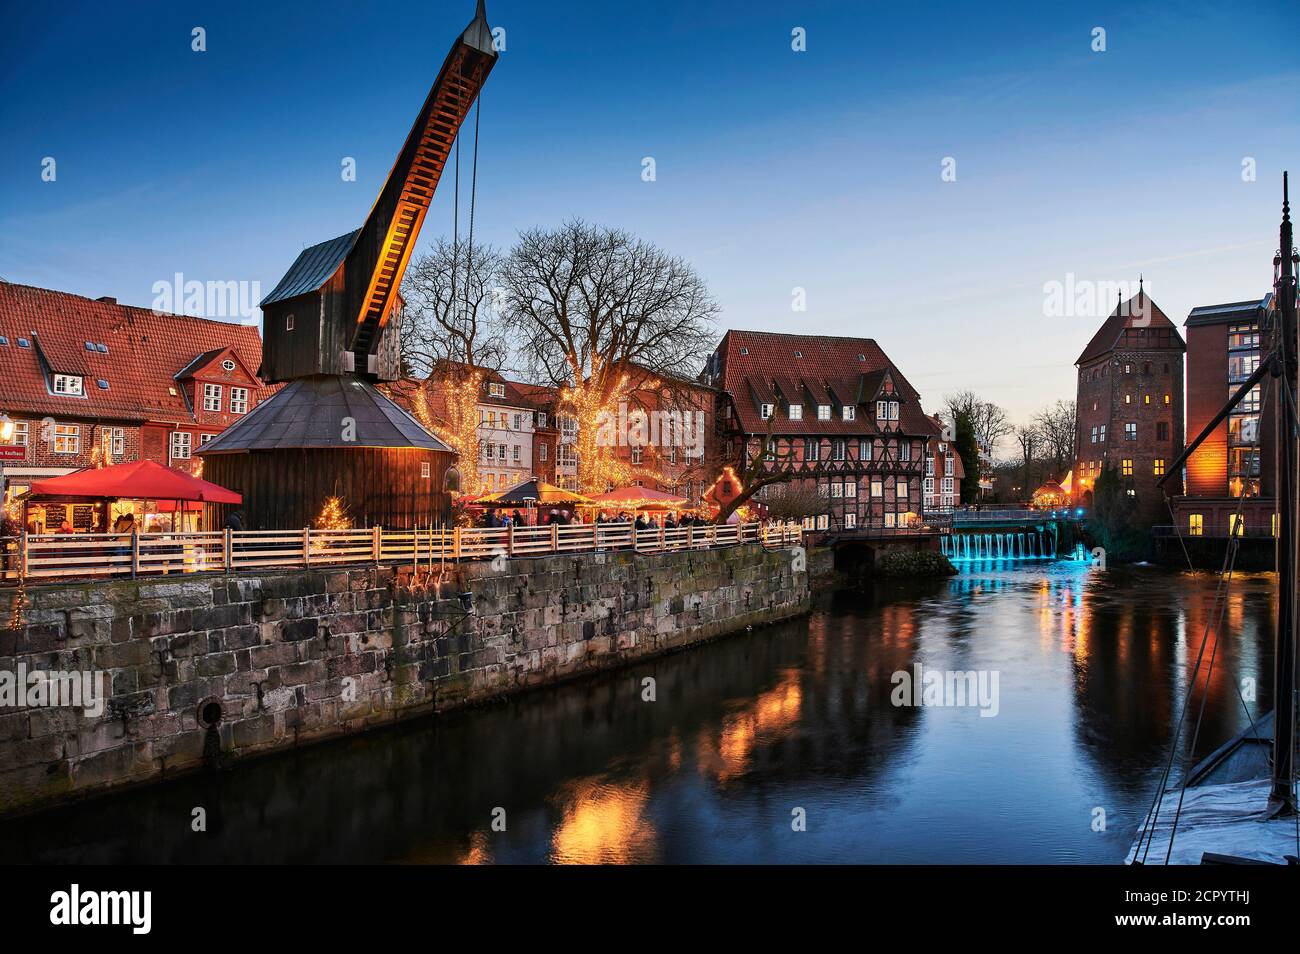 Stadtansicht, Lüneburg, Altstadt, Wasserviertel, Landmark, beleuchtet, alter Kran, am Stintmarkt, am Fischmarkt, Weihnachten, Weihnachtsmarkt, Stockfoto